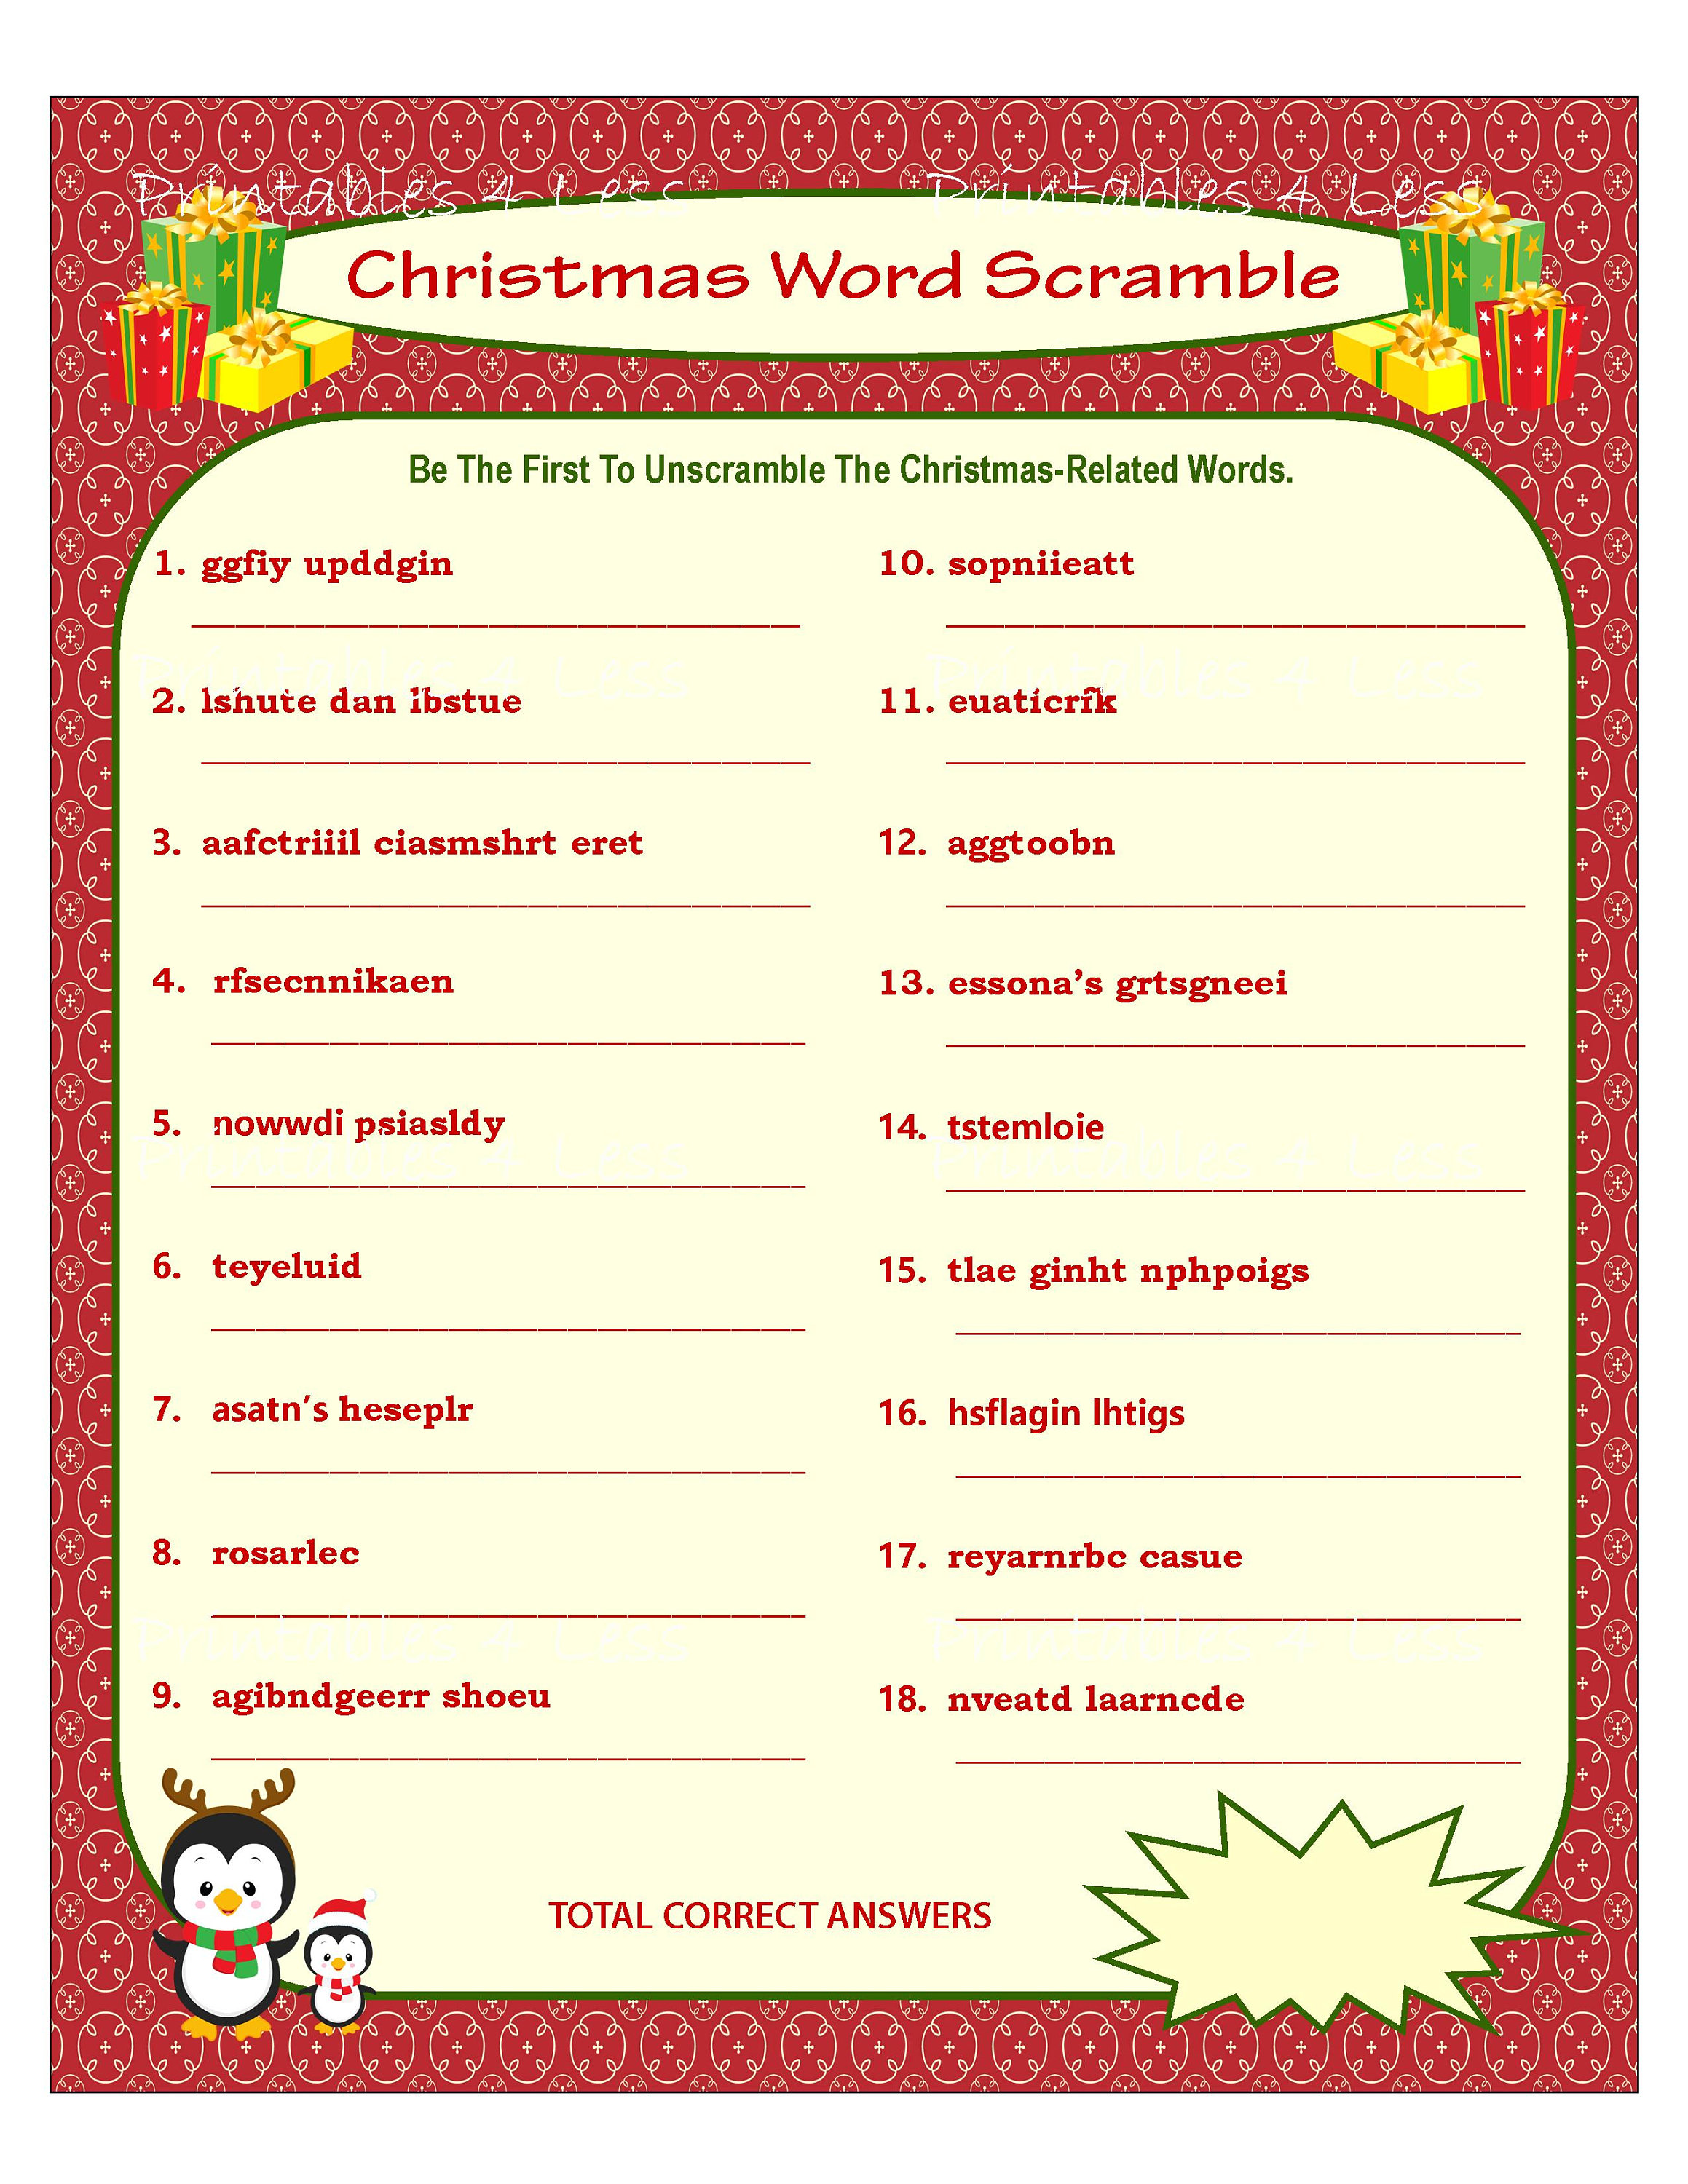 christmas-word-scramble-printable-christmas-game-diy-etsy